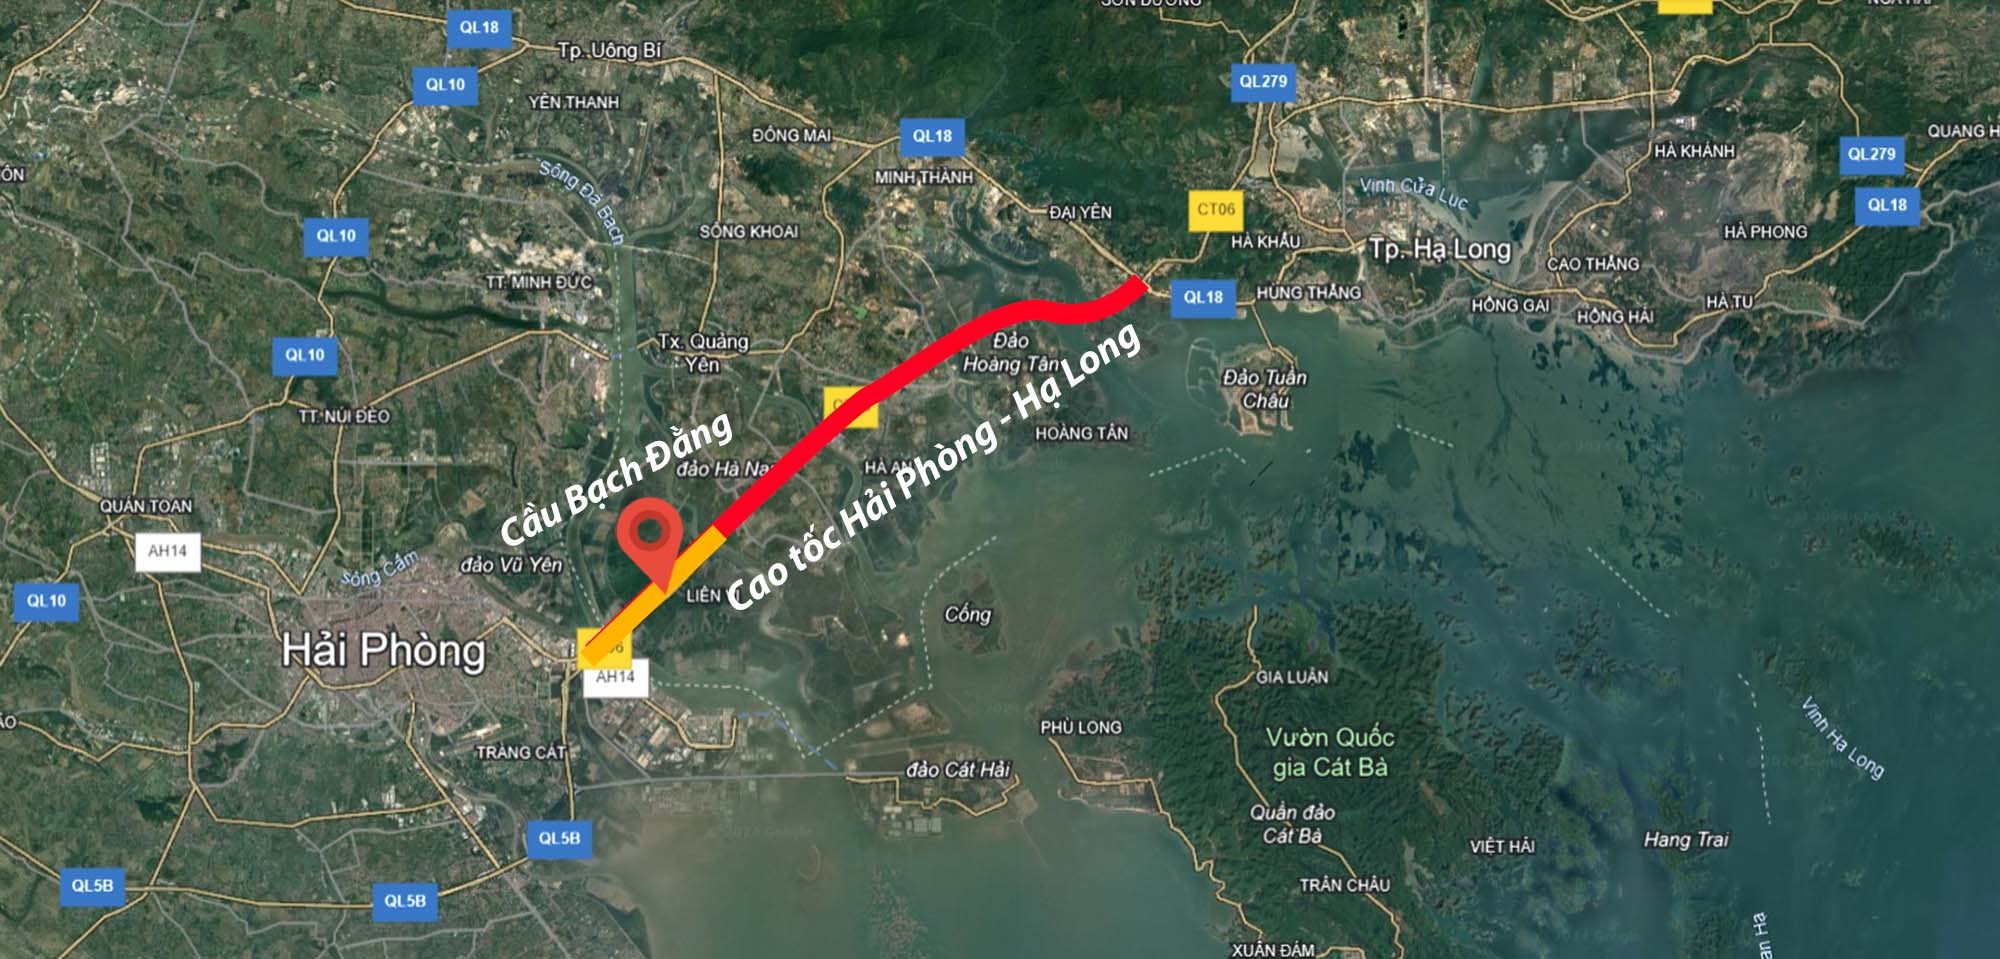 Toàn cảnh cao tốc đắt nhất Việt Nam có siêu cầu dây văng dài hơn 5 km, riêng dây cáp đã nặng 800 tấn- Ảnh 2.